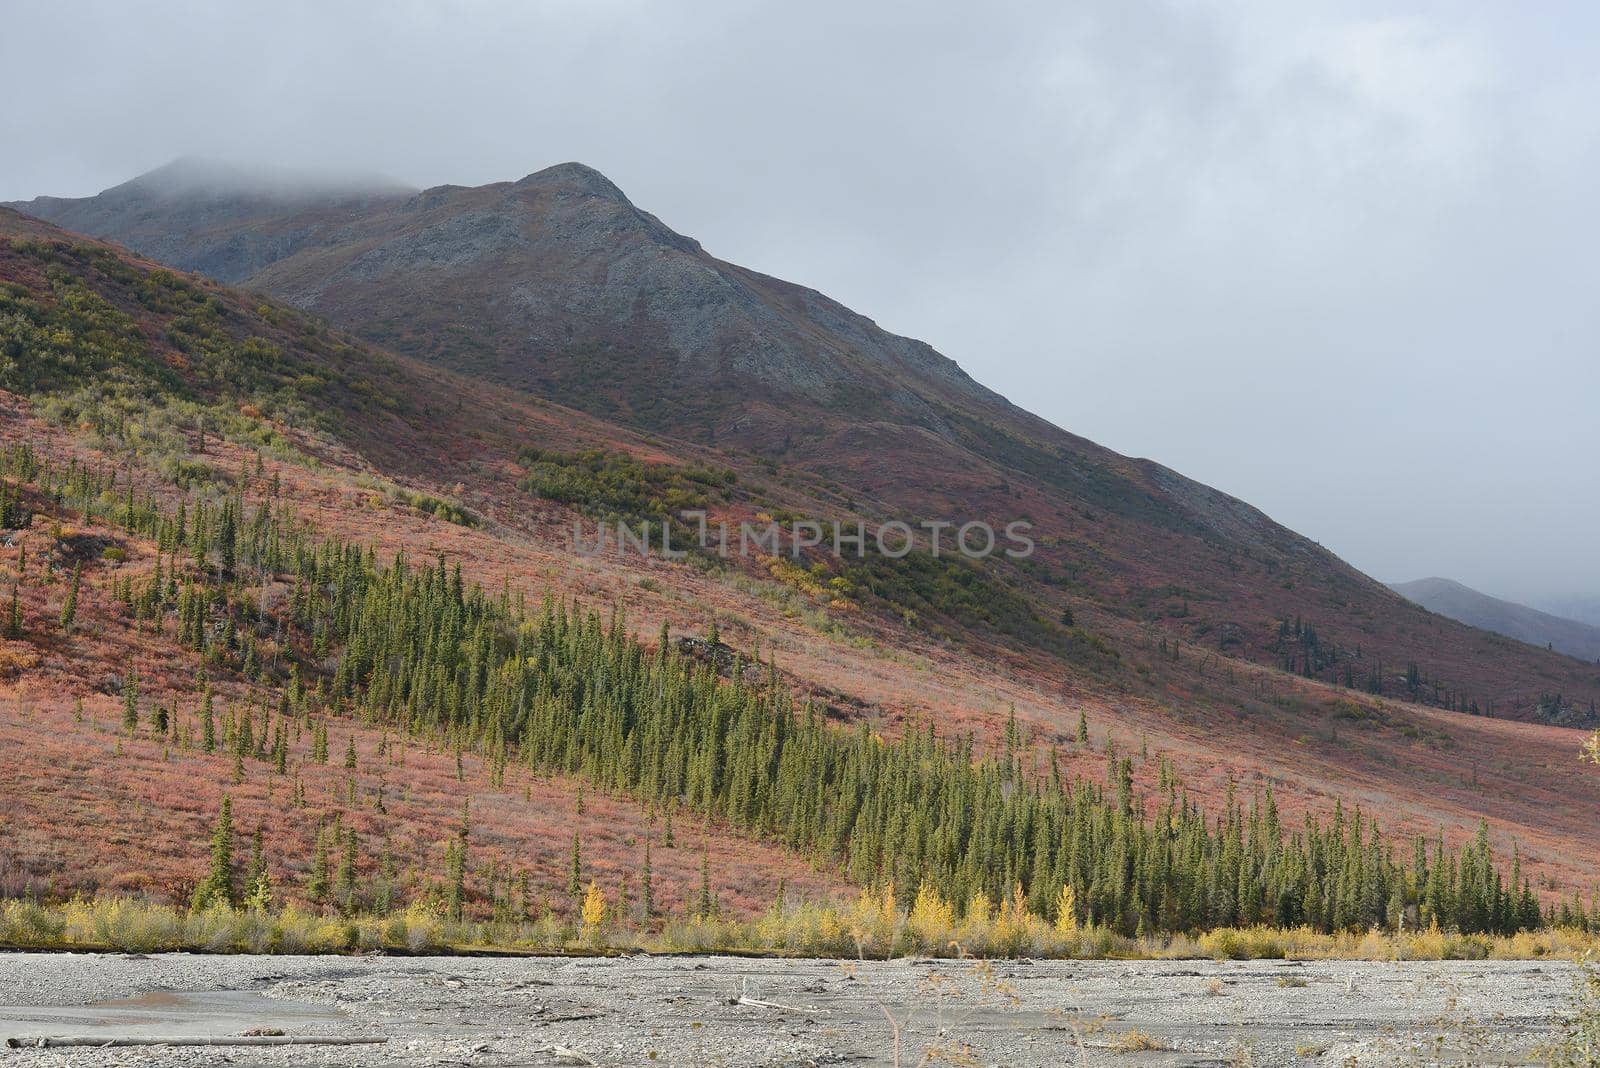 alaskan tundra in autumn